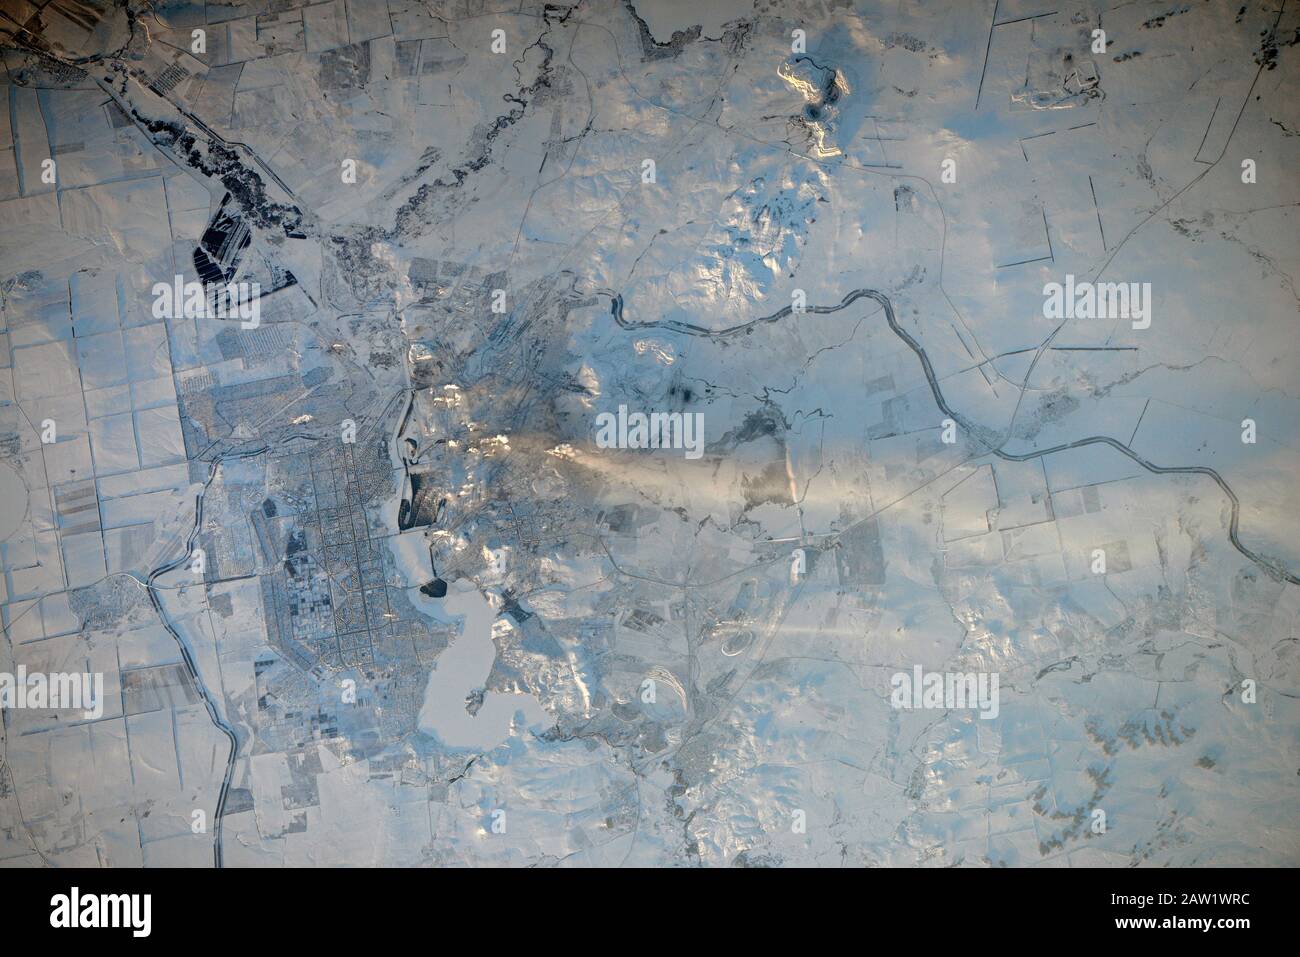 Magnitogorsk, RUSSLAND - 15. Dezember 2016 - Die Industriestadt Magnitogorsk in Russland, wie von einem ISS-Astronauten fotografiert Stockfoto